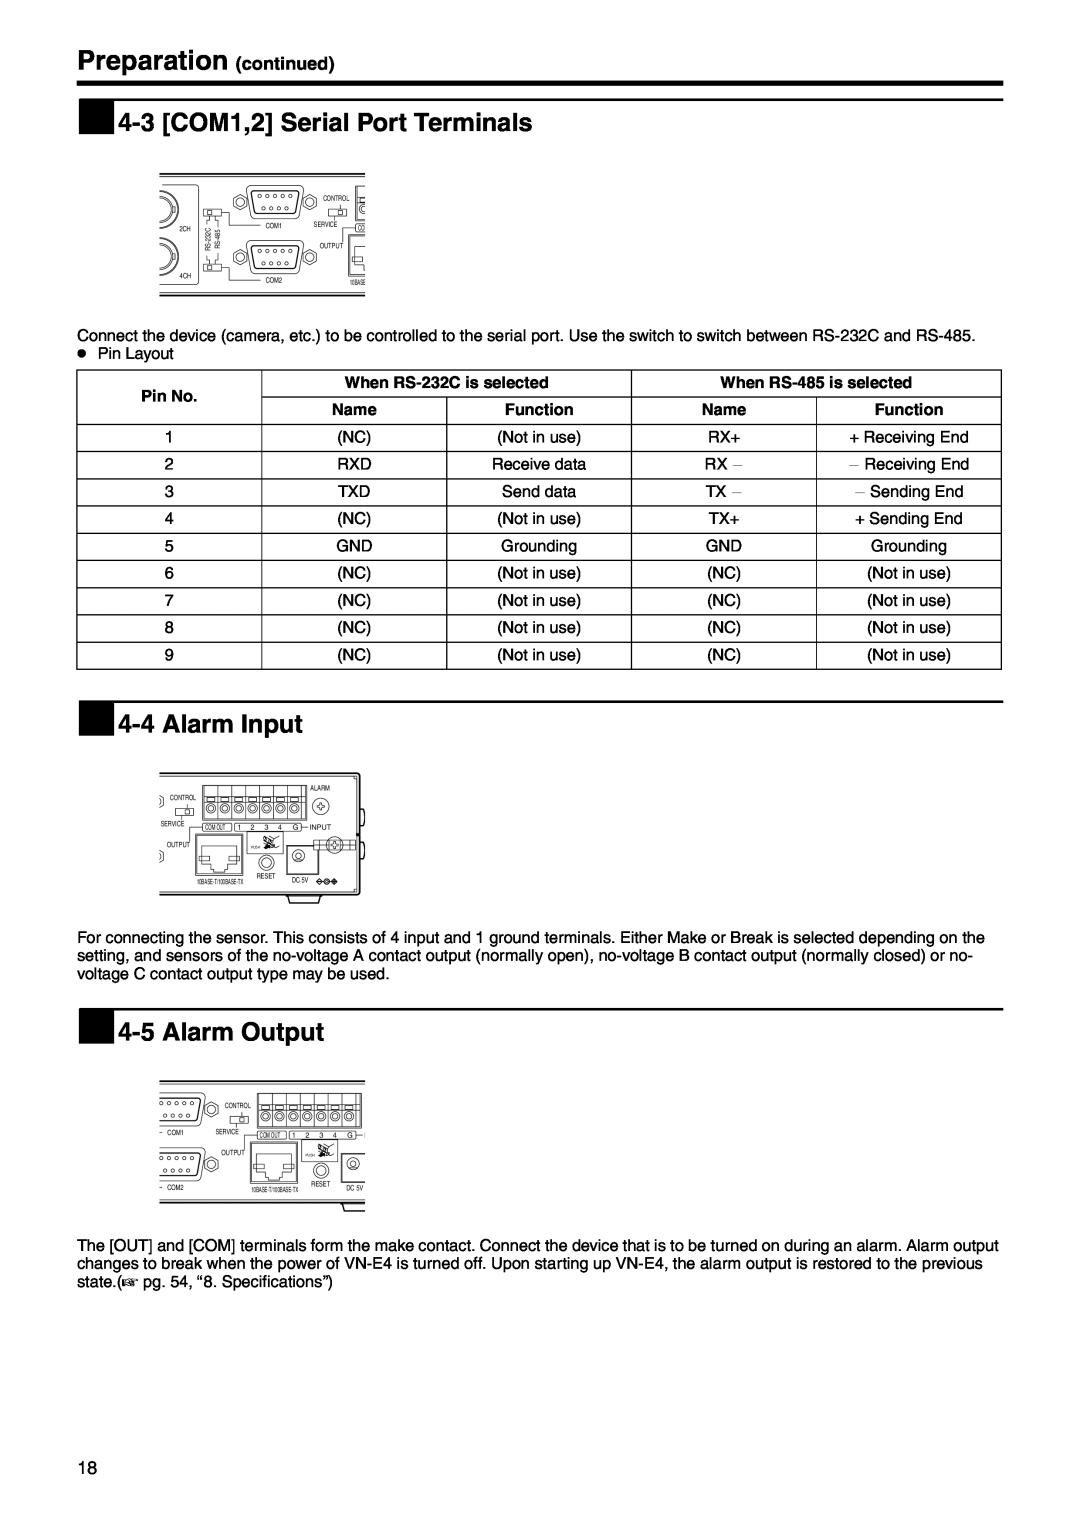 JVC VN-E4  4-3 COM1,2 Serial Port Terminals,  4-4 Alarm Input,  4-5 Alarm Output, Preparation continued, Pin No, Name 